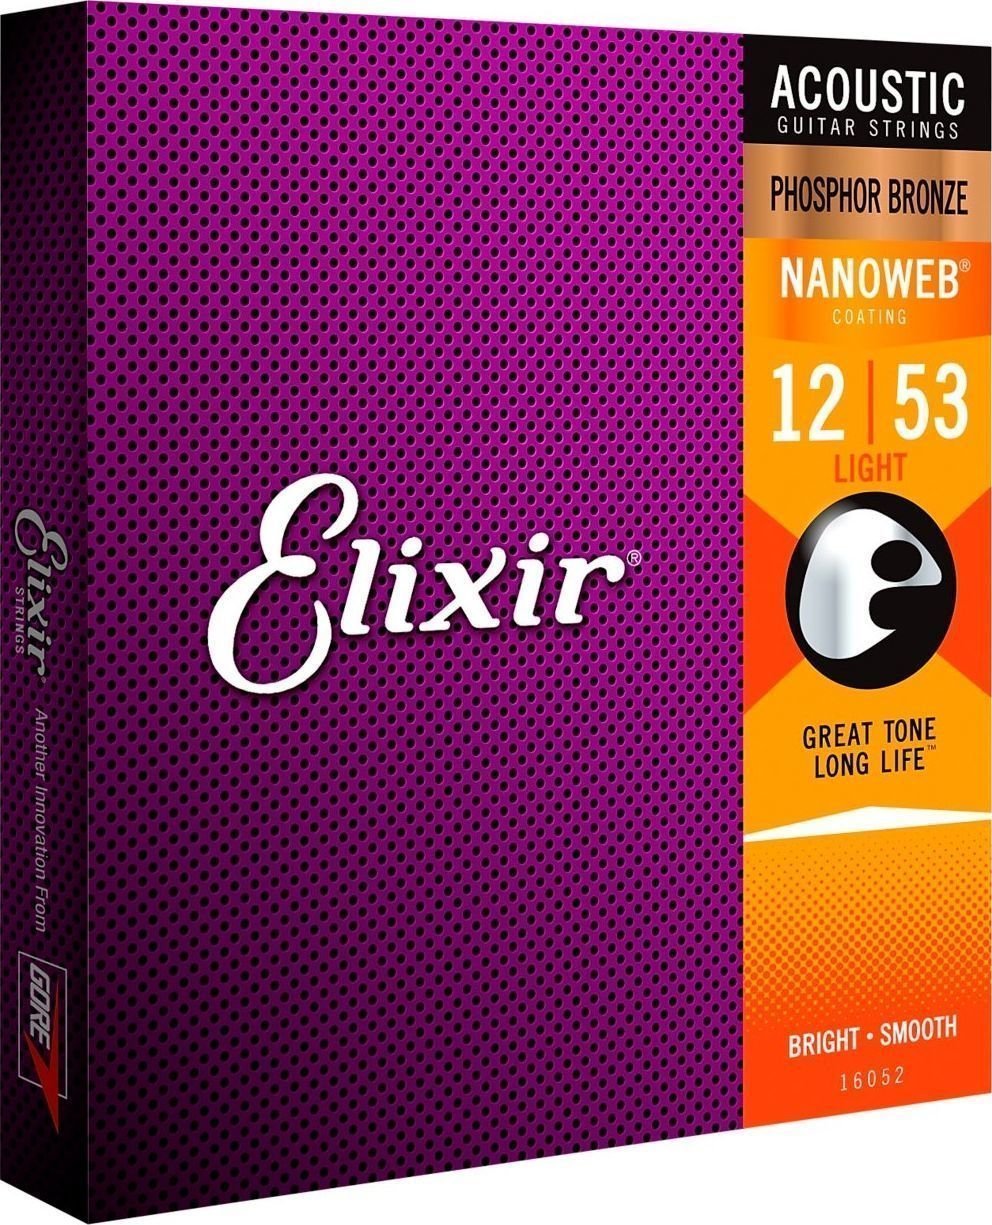 Struny pre akustickú gitaru Elixir 16052 Nanoweb 12-53